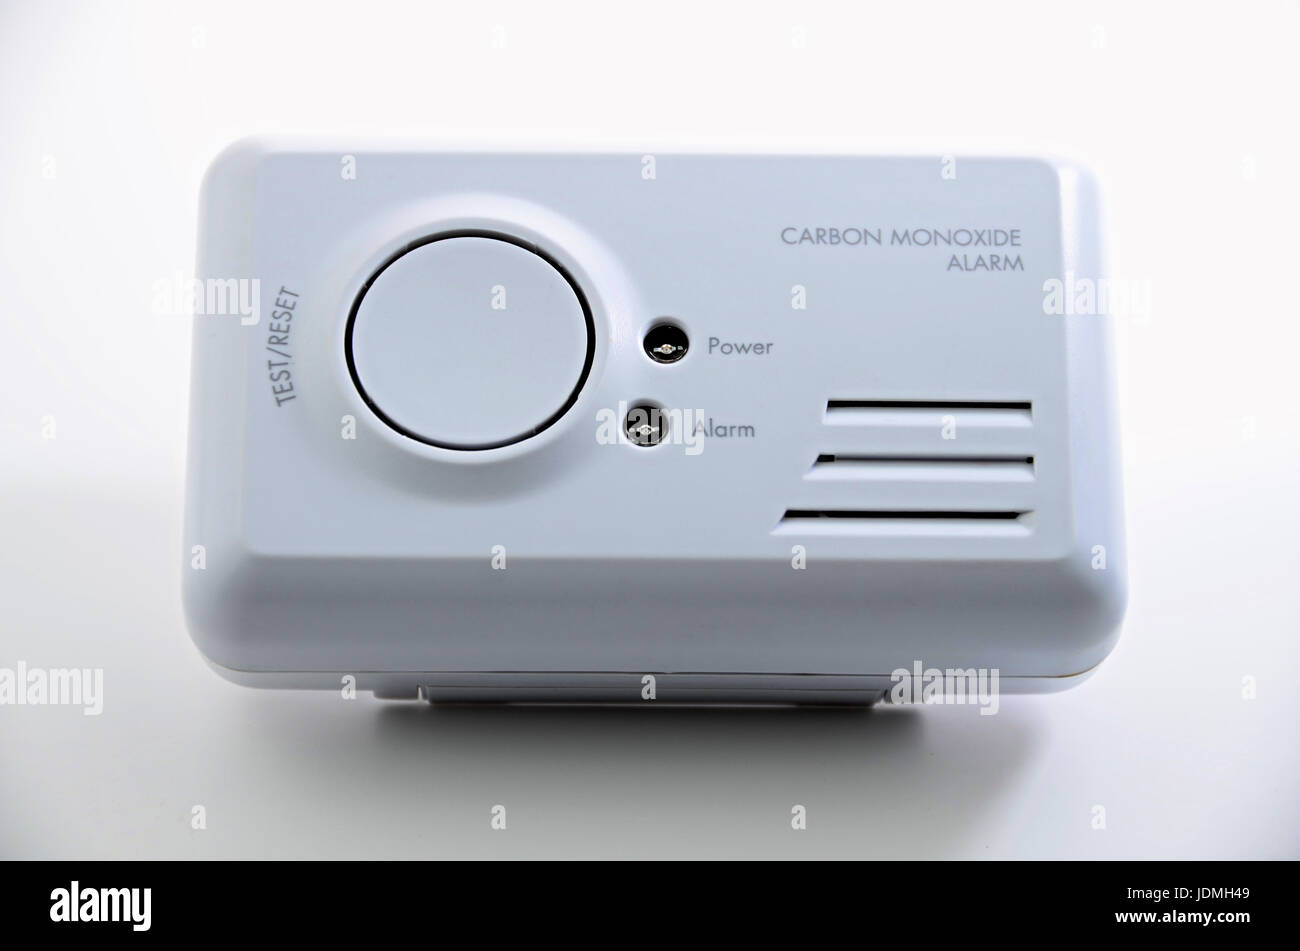 Carbon monoxide alarm on white  background. Stock Photo